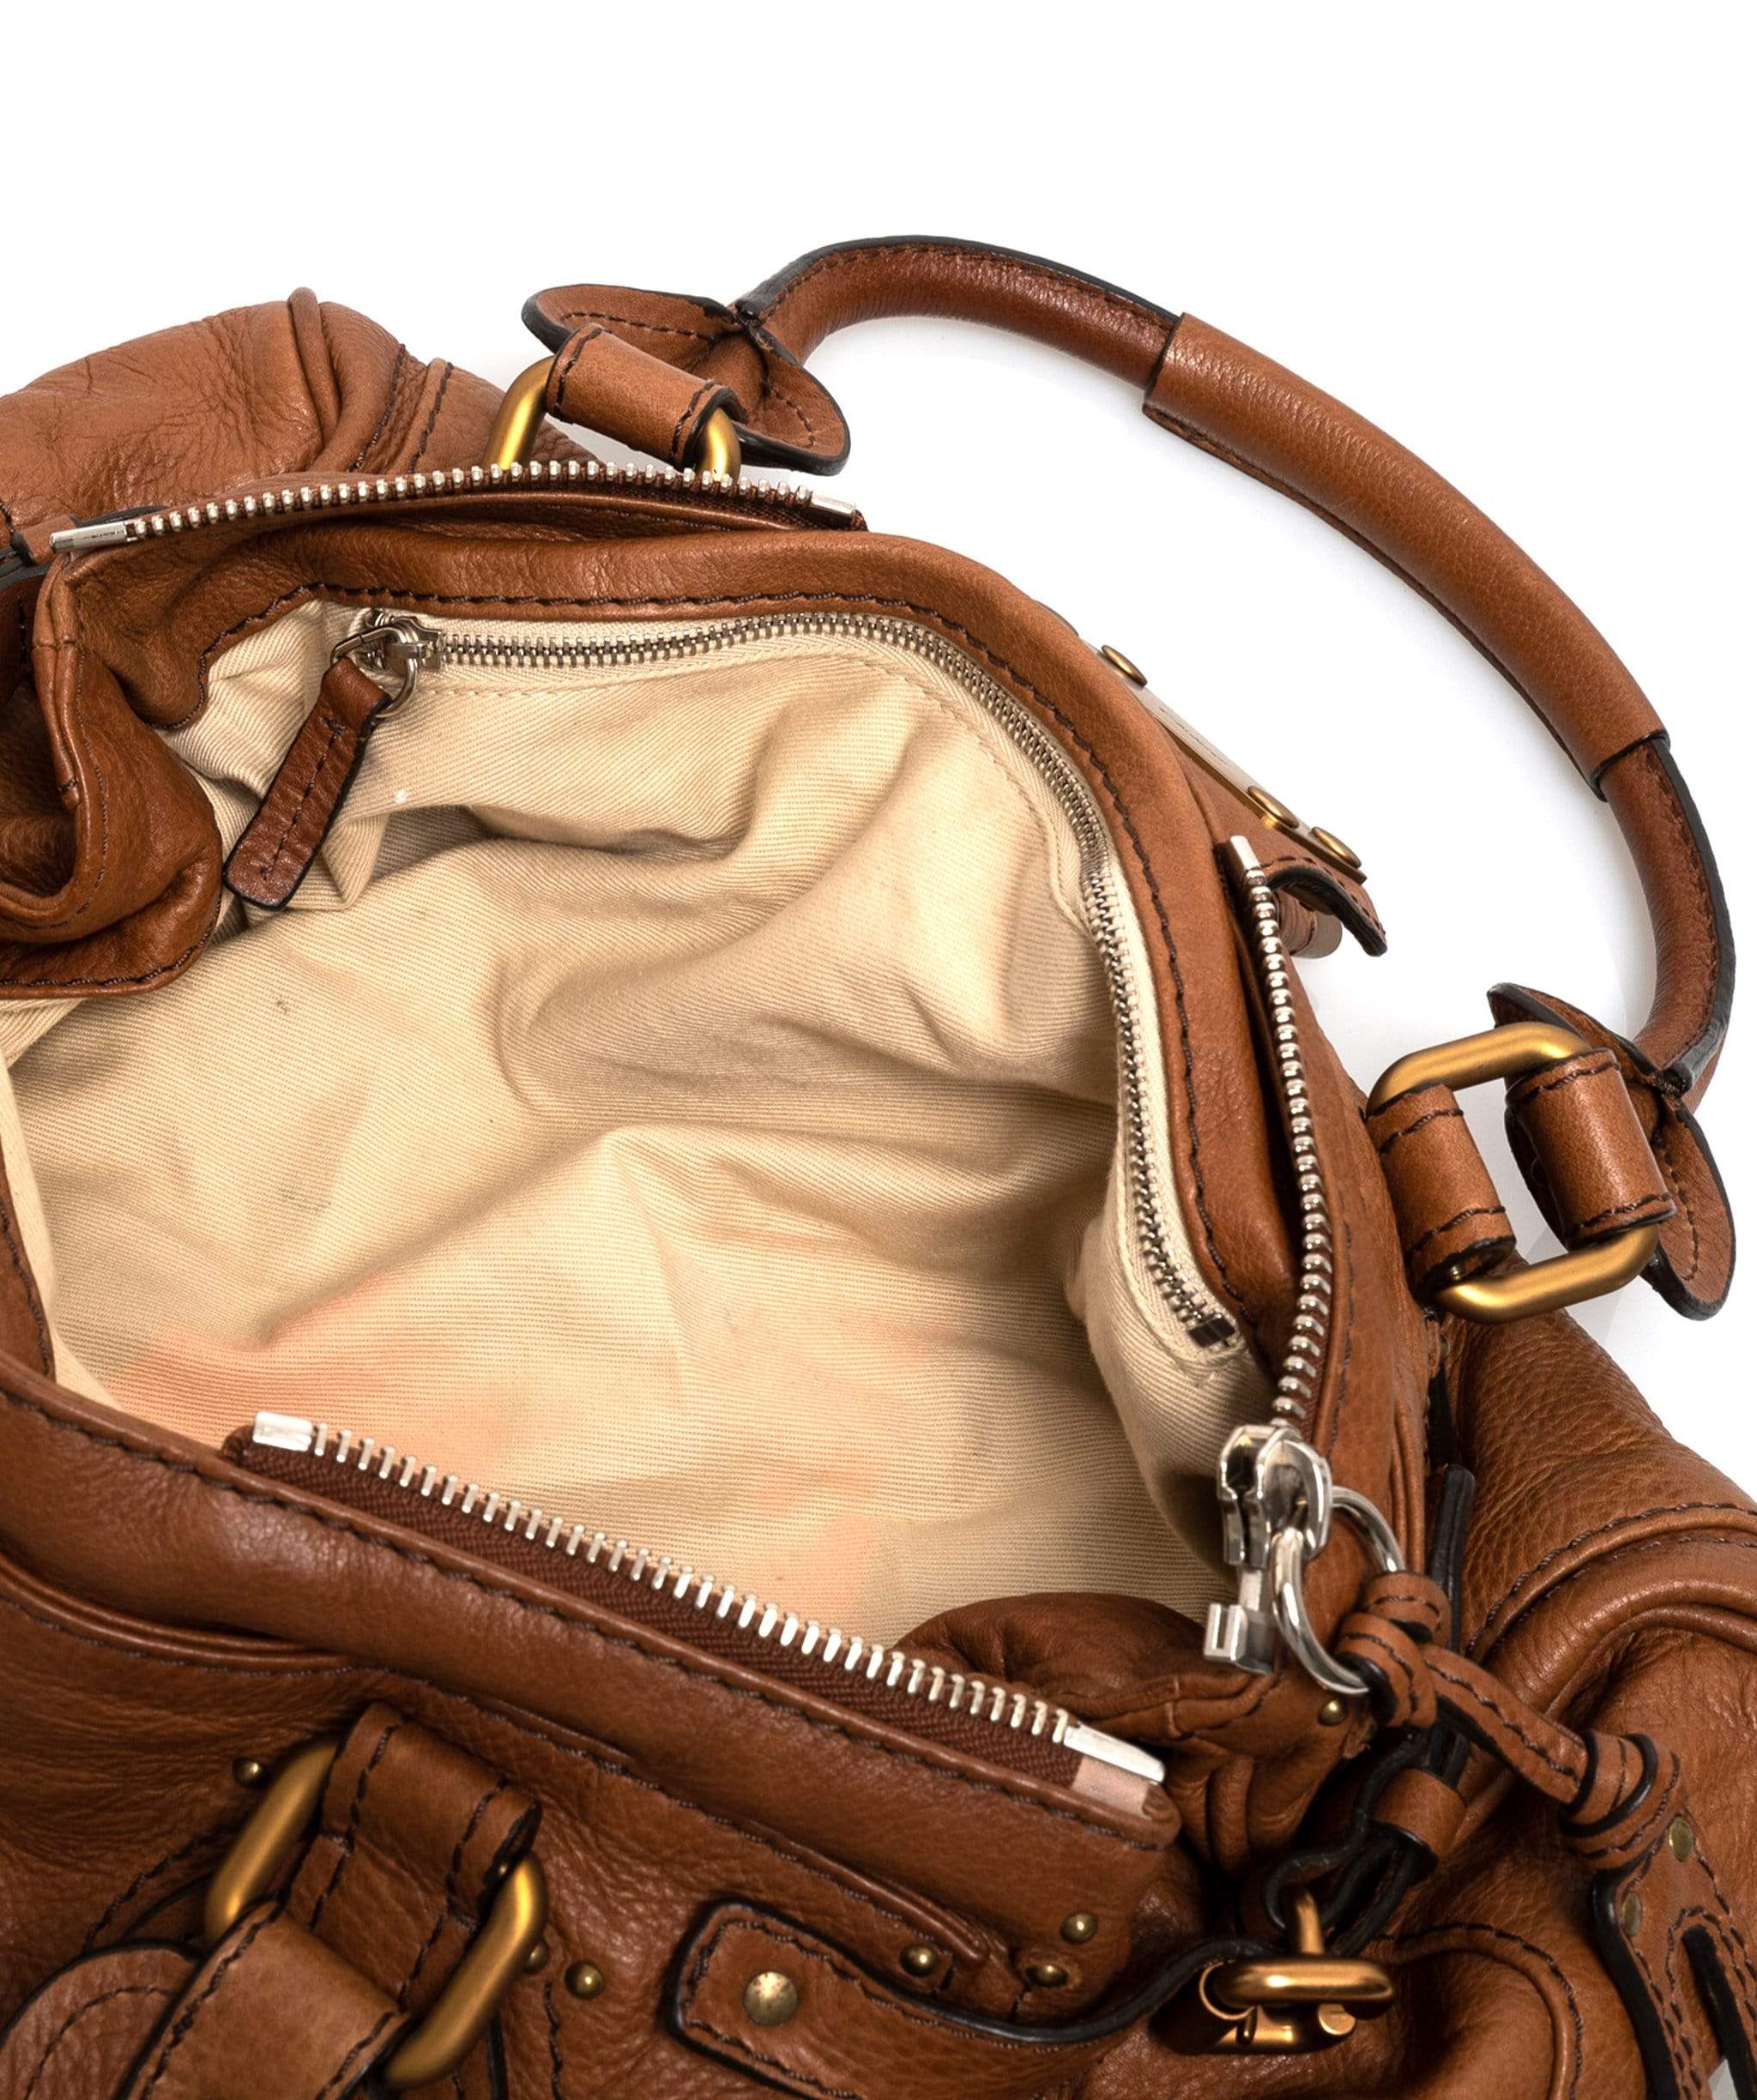 Chloé Chloe Paddington Camel Leather Bag - CW1283